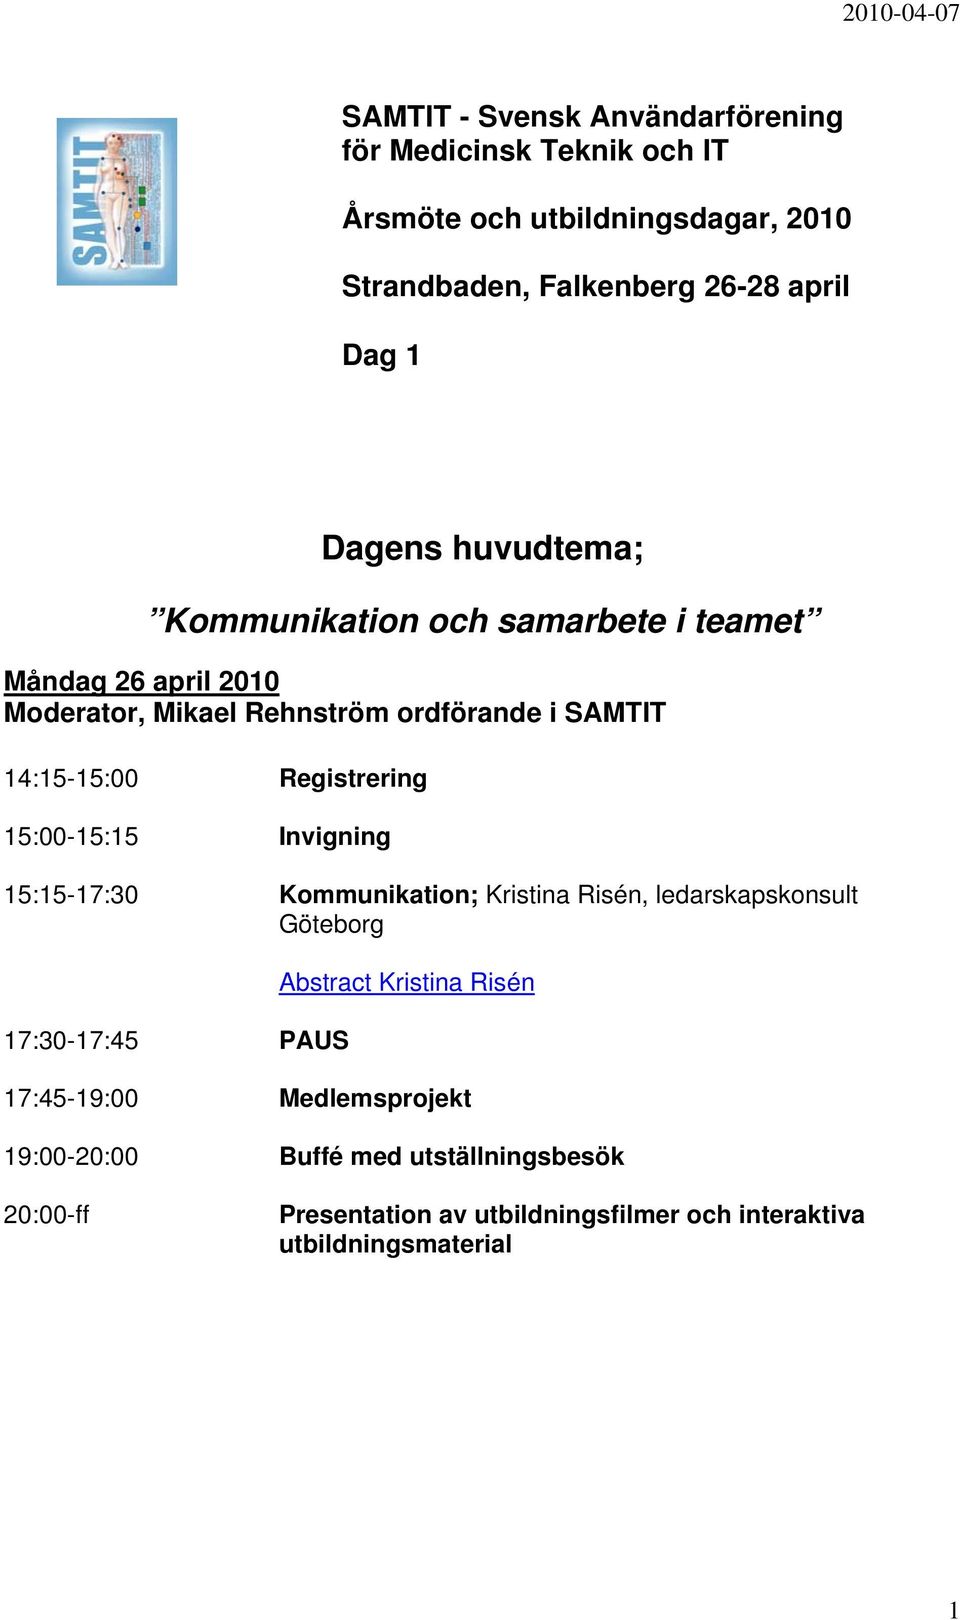 Registrering 15:00-15:15 Invigning 15:15-17:30 Kommunikation; Kristina Risén, ledarskapskonsult Göteborg 17:30-17:45 PAUS Abstract Kristina